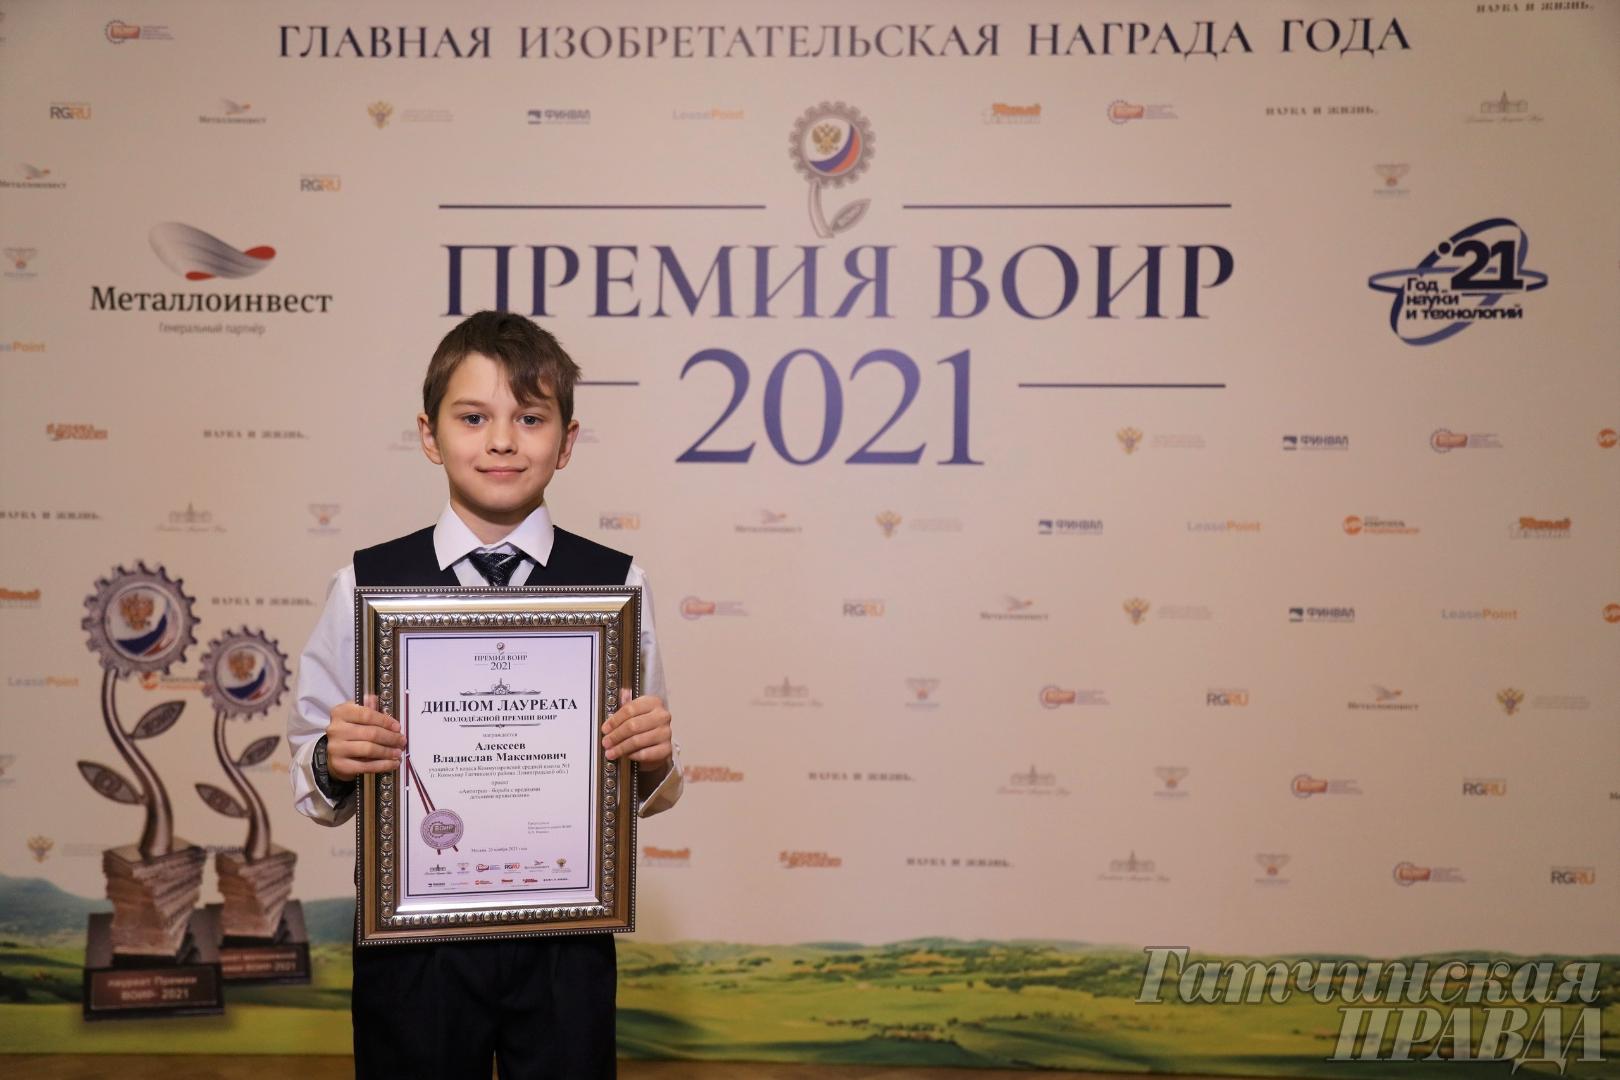 «Антигрыз» гатчинского школьника получил премию ВОИР